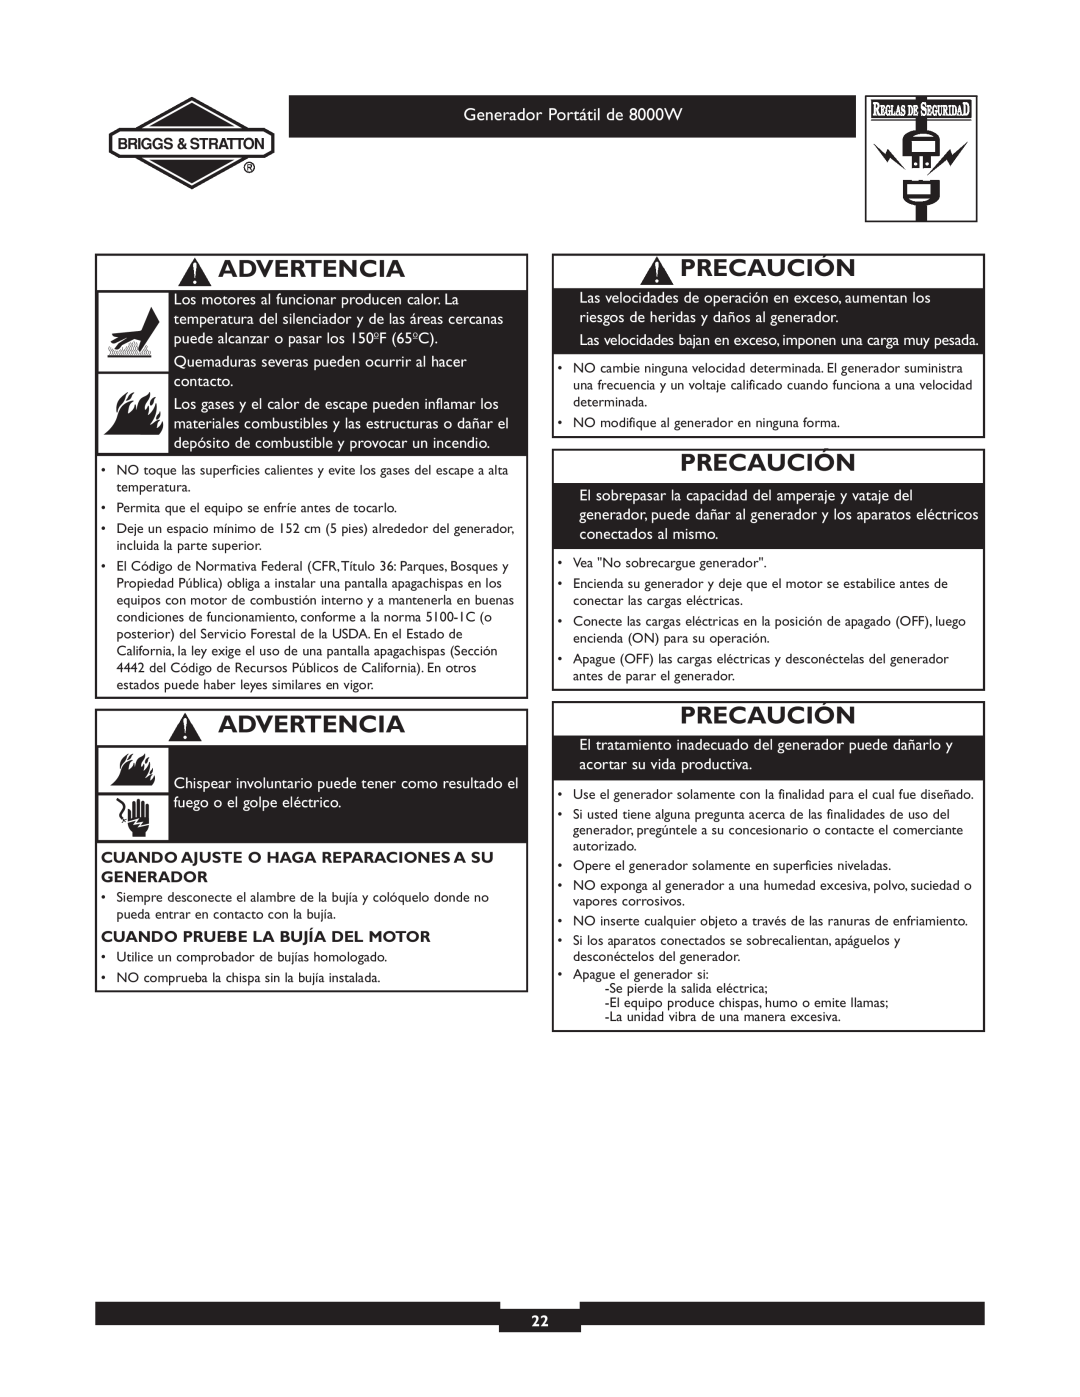 Briggs & Stratton 030210-2 manual Precaución, Advertencia, Generador Portátil de 8000W, Cuando Pruebe La Bujía Del Motor 